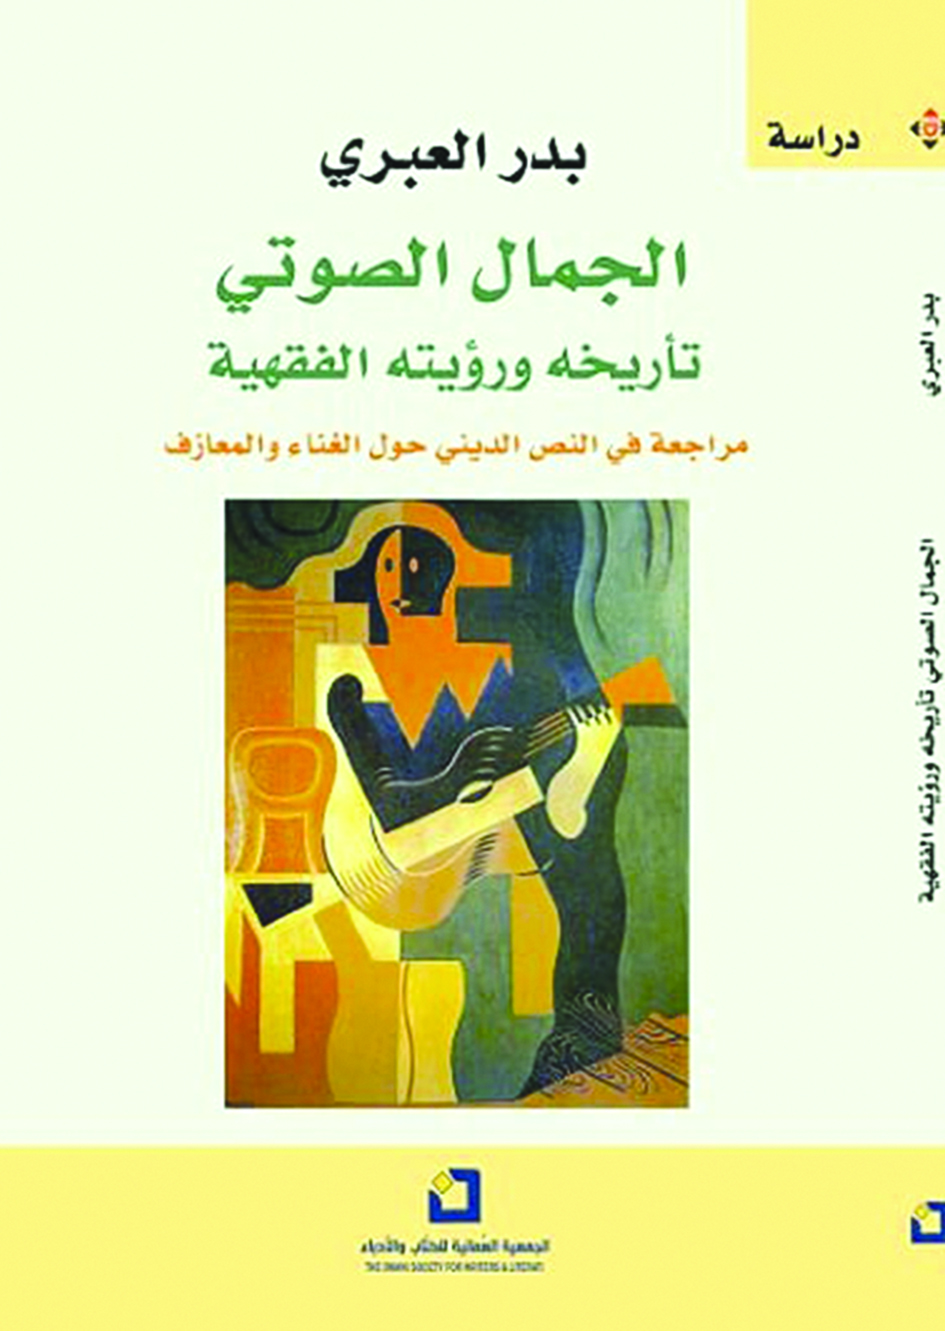 26 إصدارا أدبيا جديدا لـ "العمانية للكتاب والأدباء"